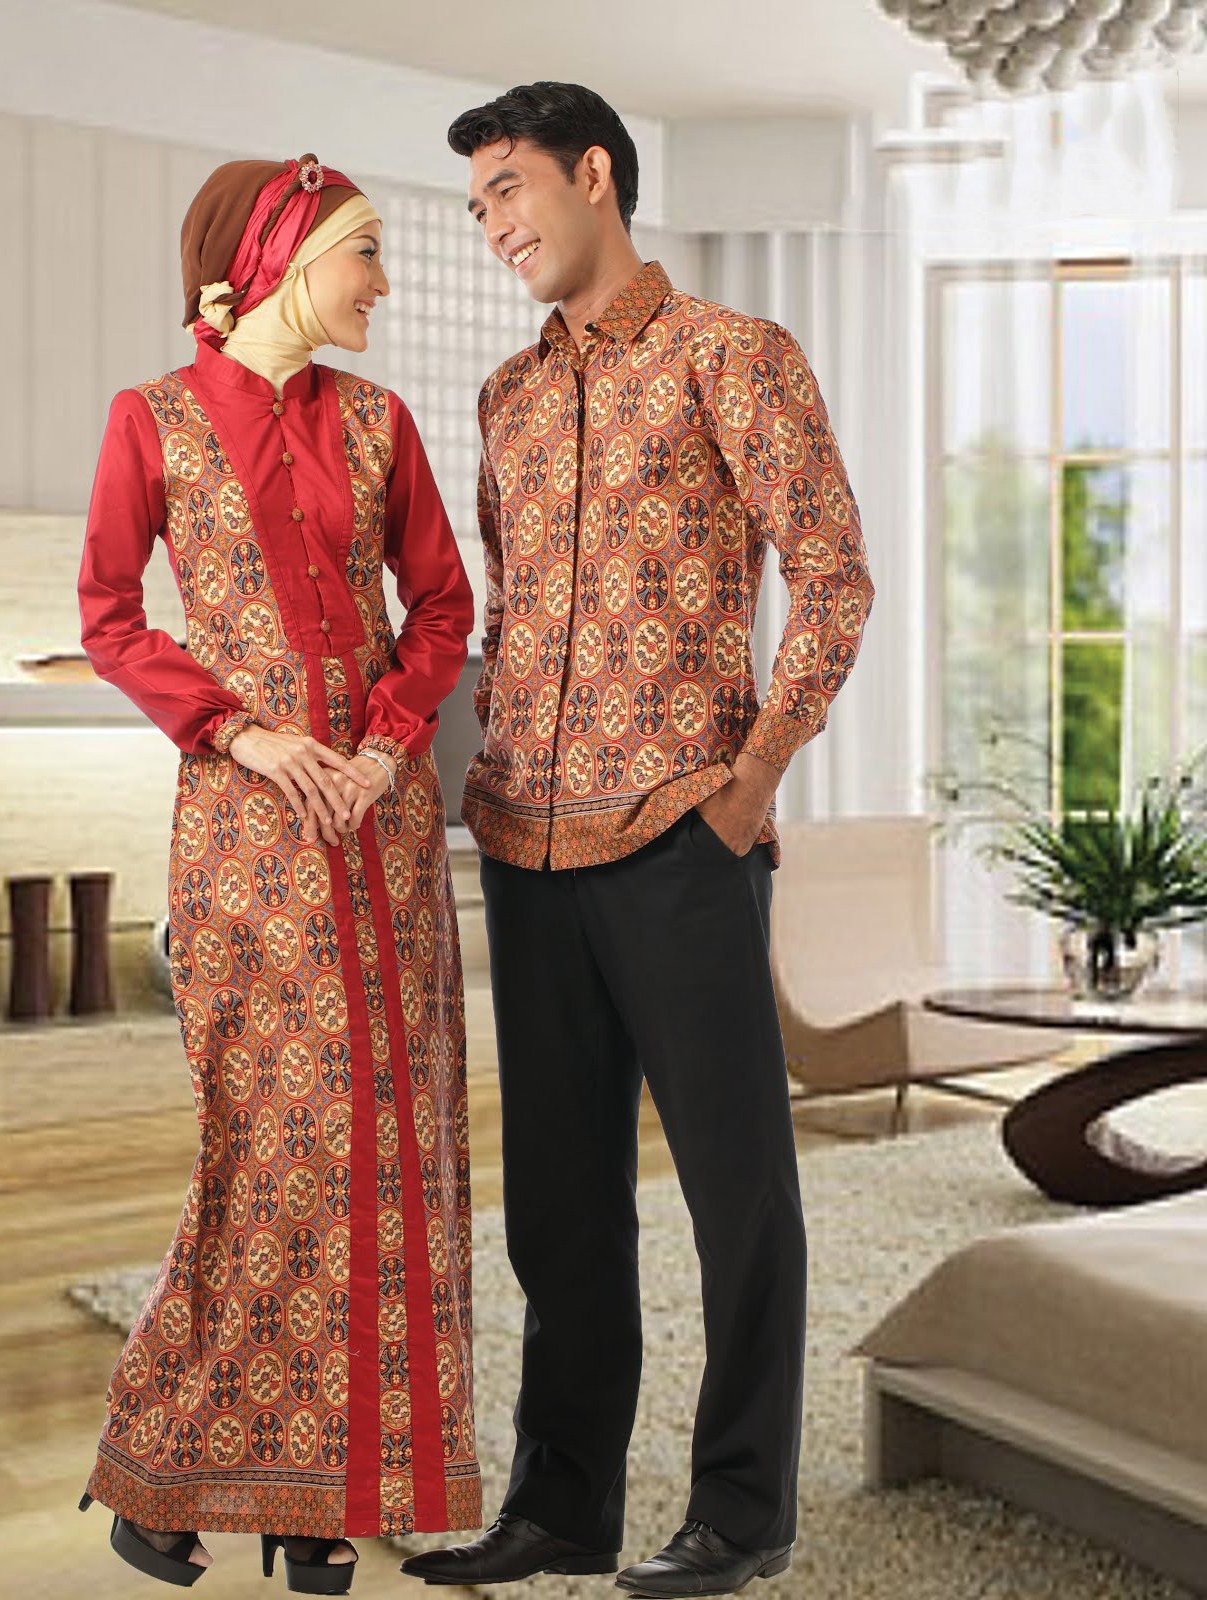 Inspirasi Baju Lebaran Pria Jxdu Trend Model Baju Batik Lebaran Terbaru 2013